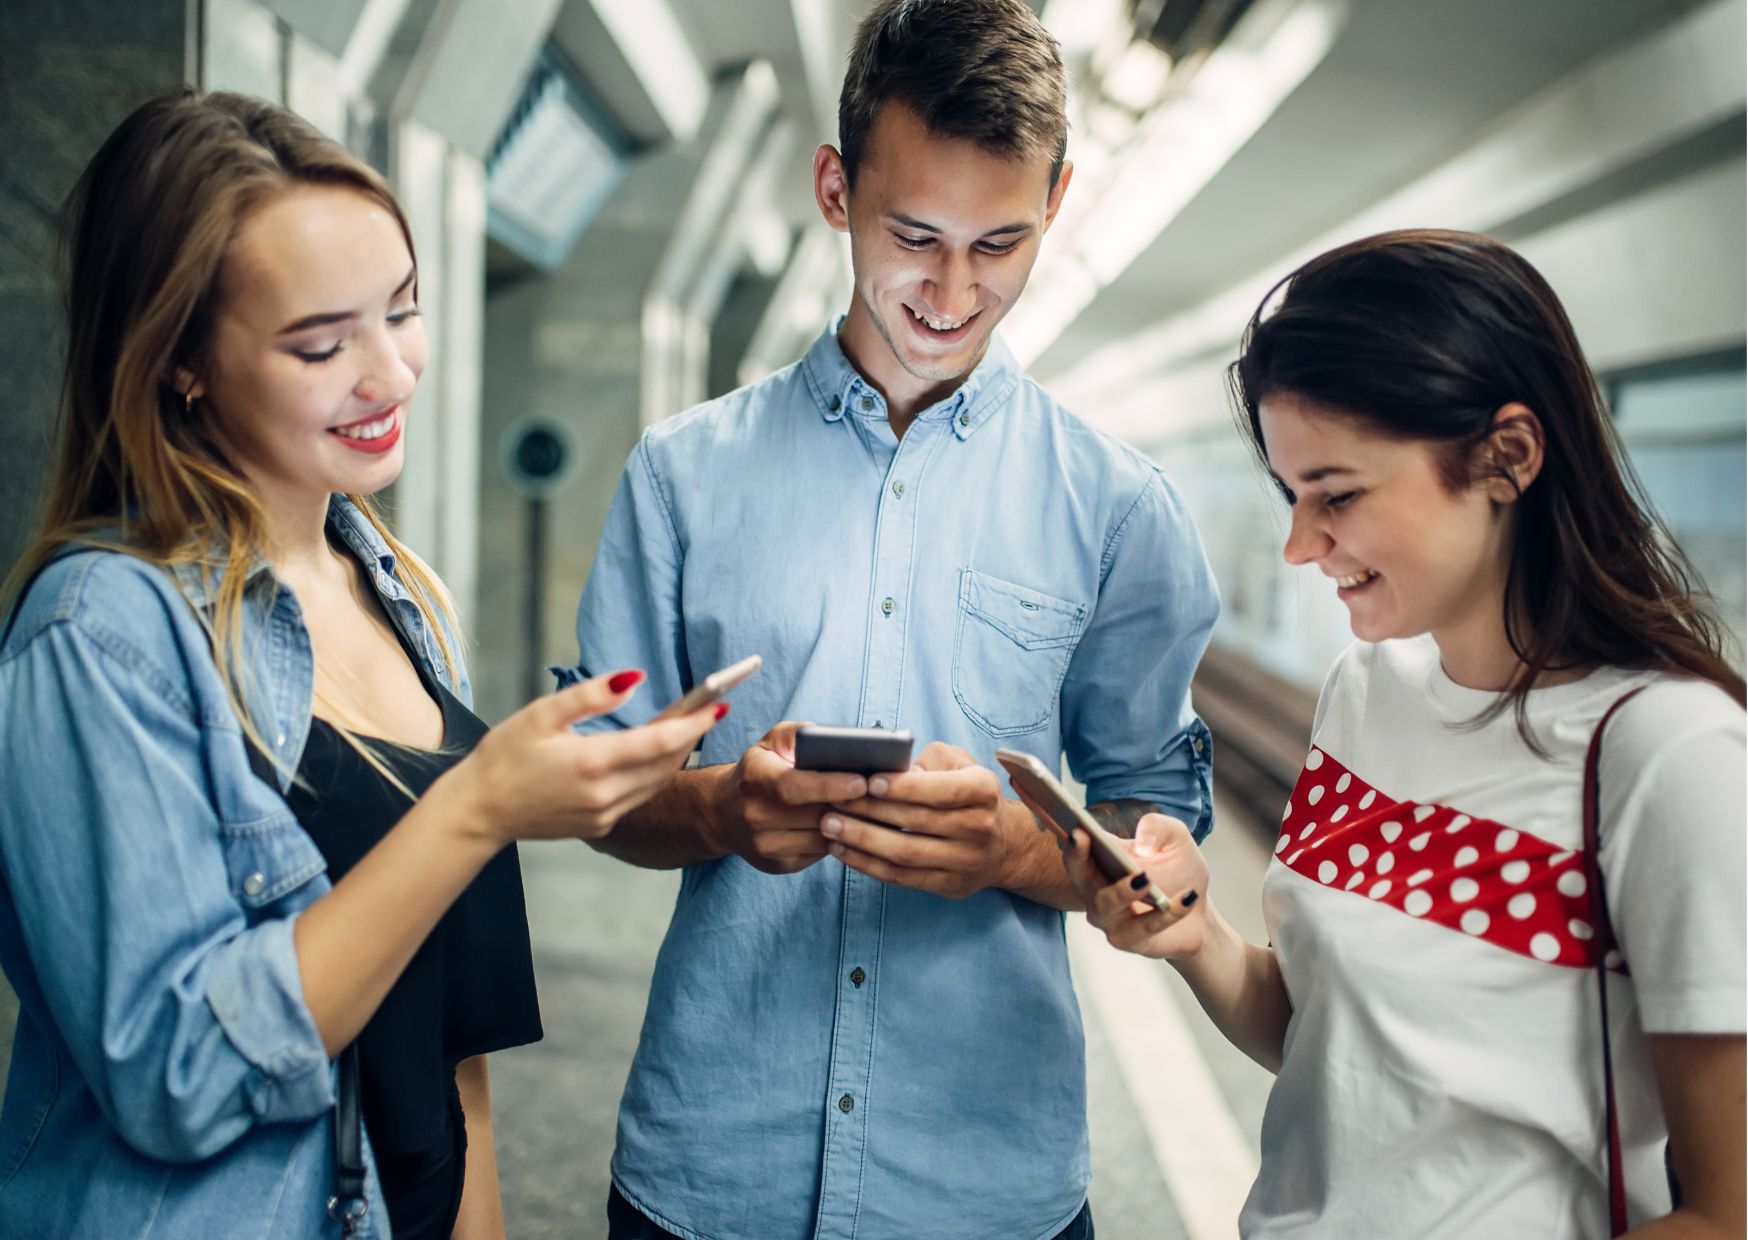 Kuvassa kolme nuorta (kaksi tyttöä ja yksi poika) seisovat ryhmässä ja katsovat kännyköitään iloisina